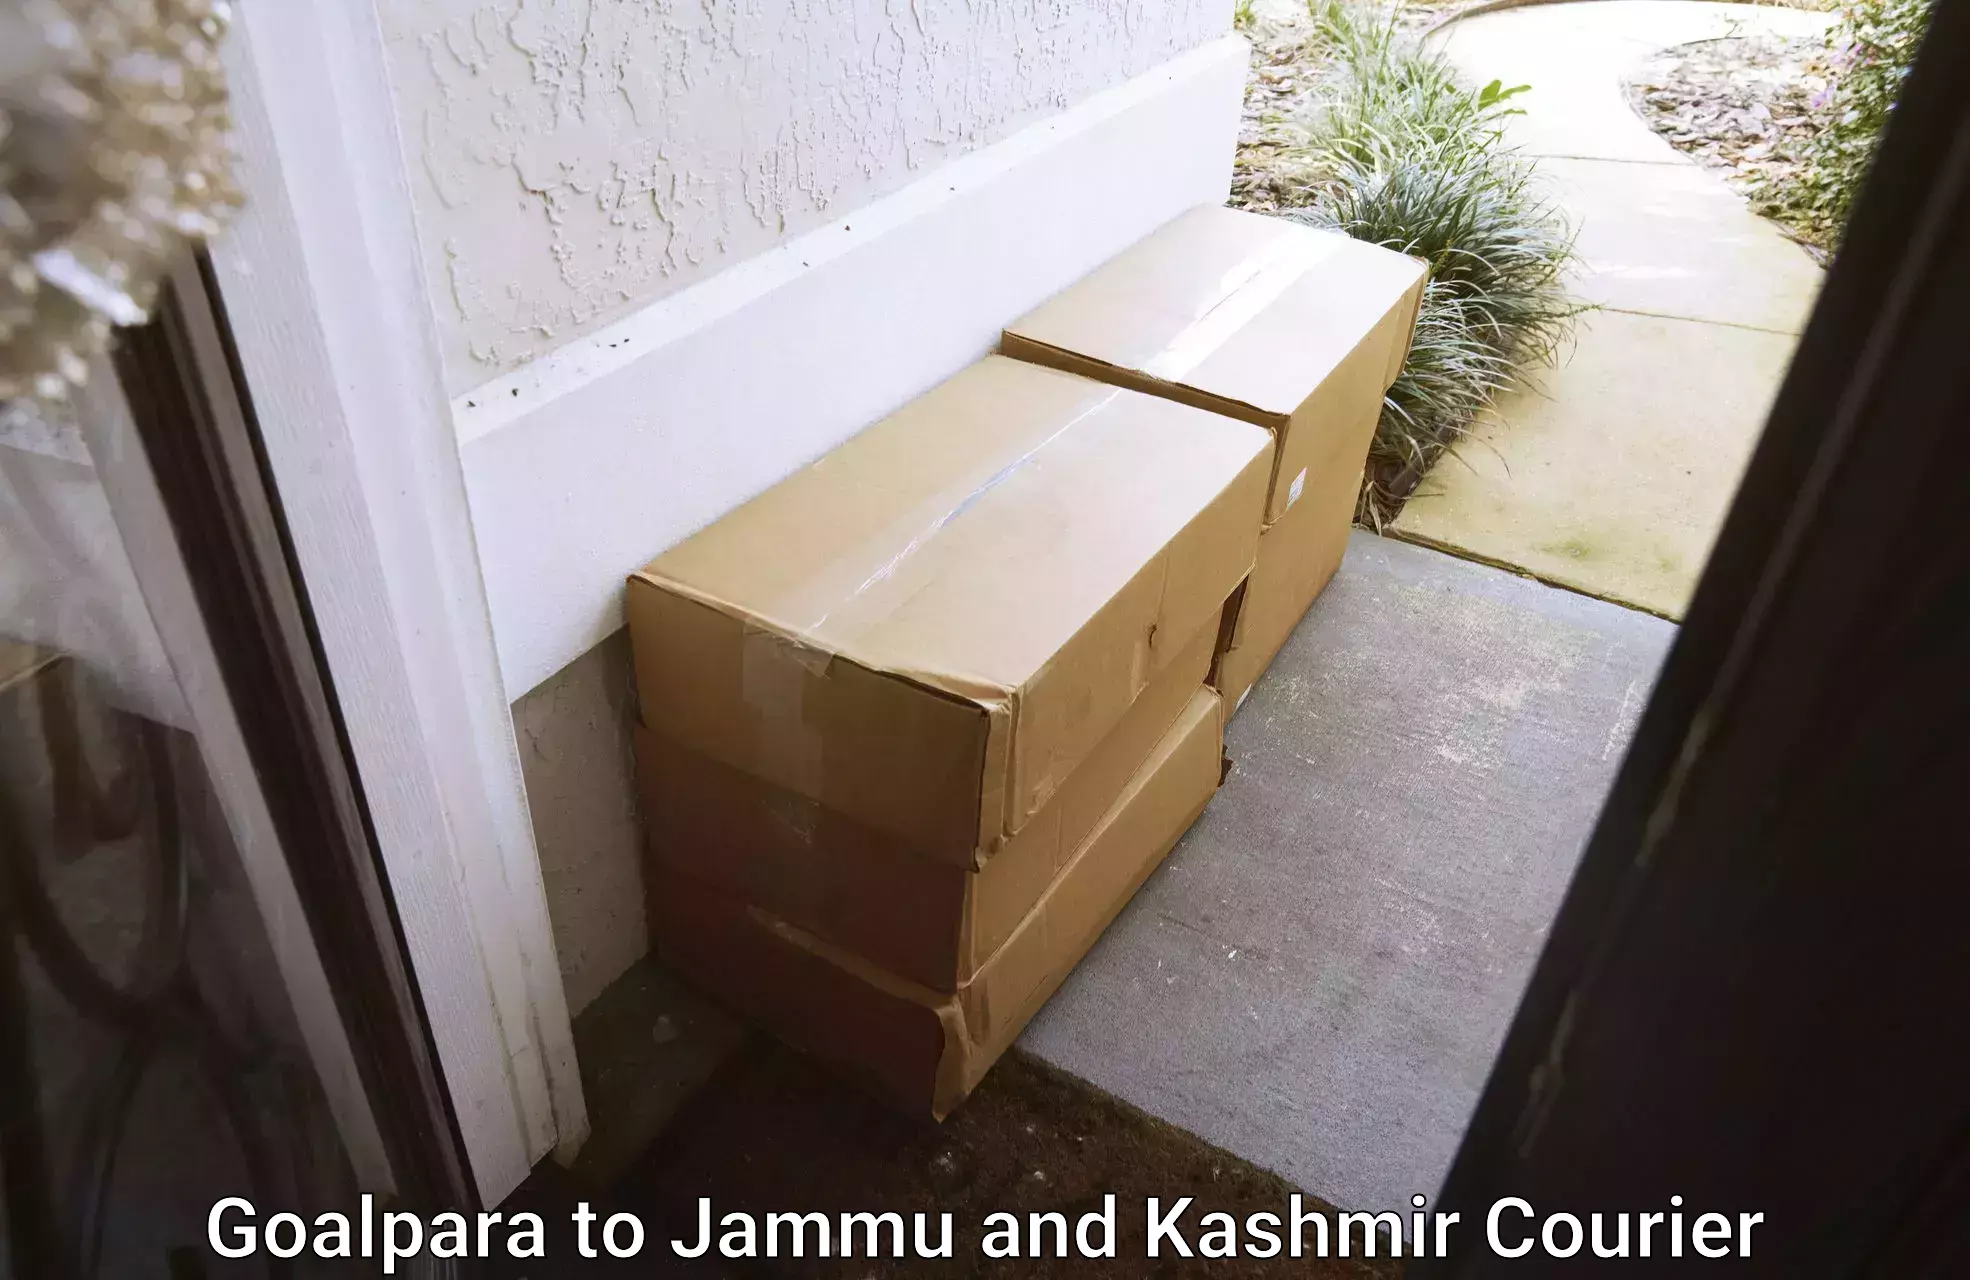 Pharmaceutical courier Goalpara to Jammu